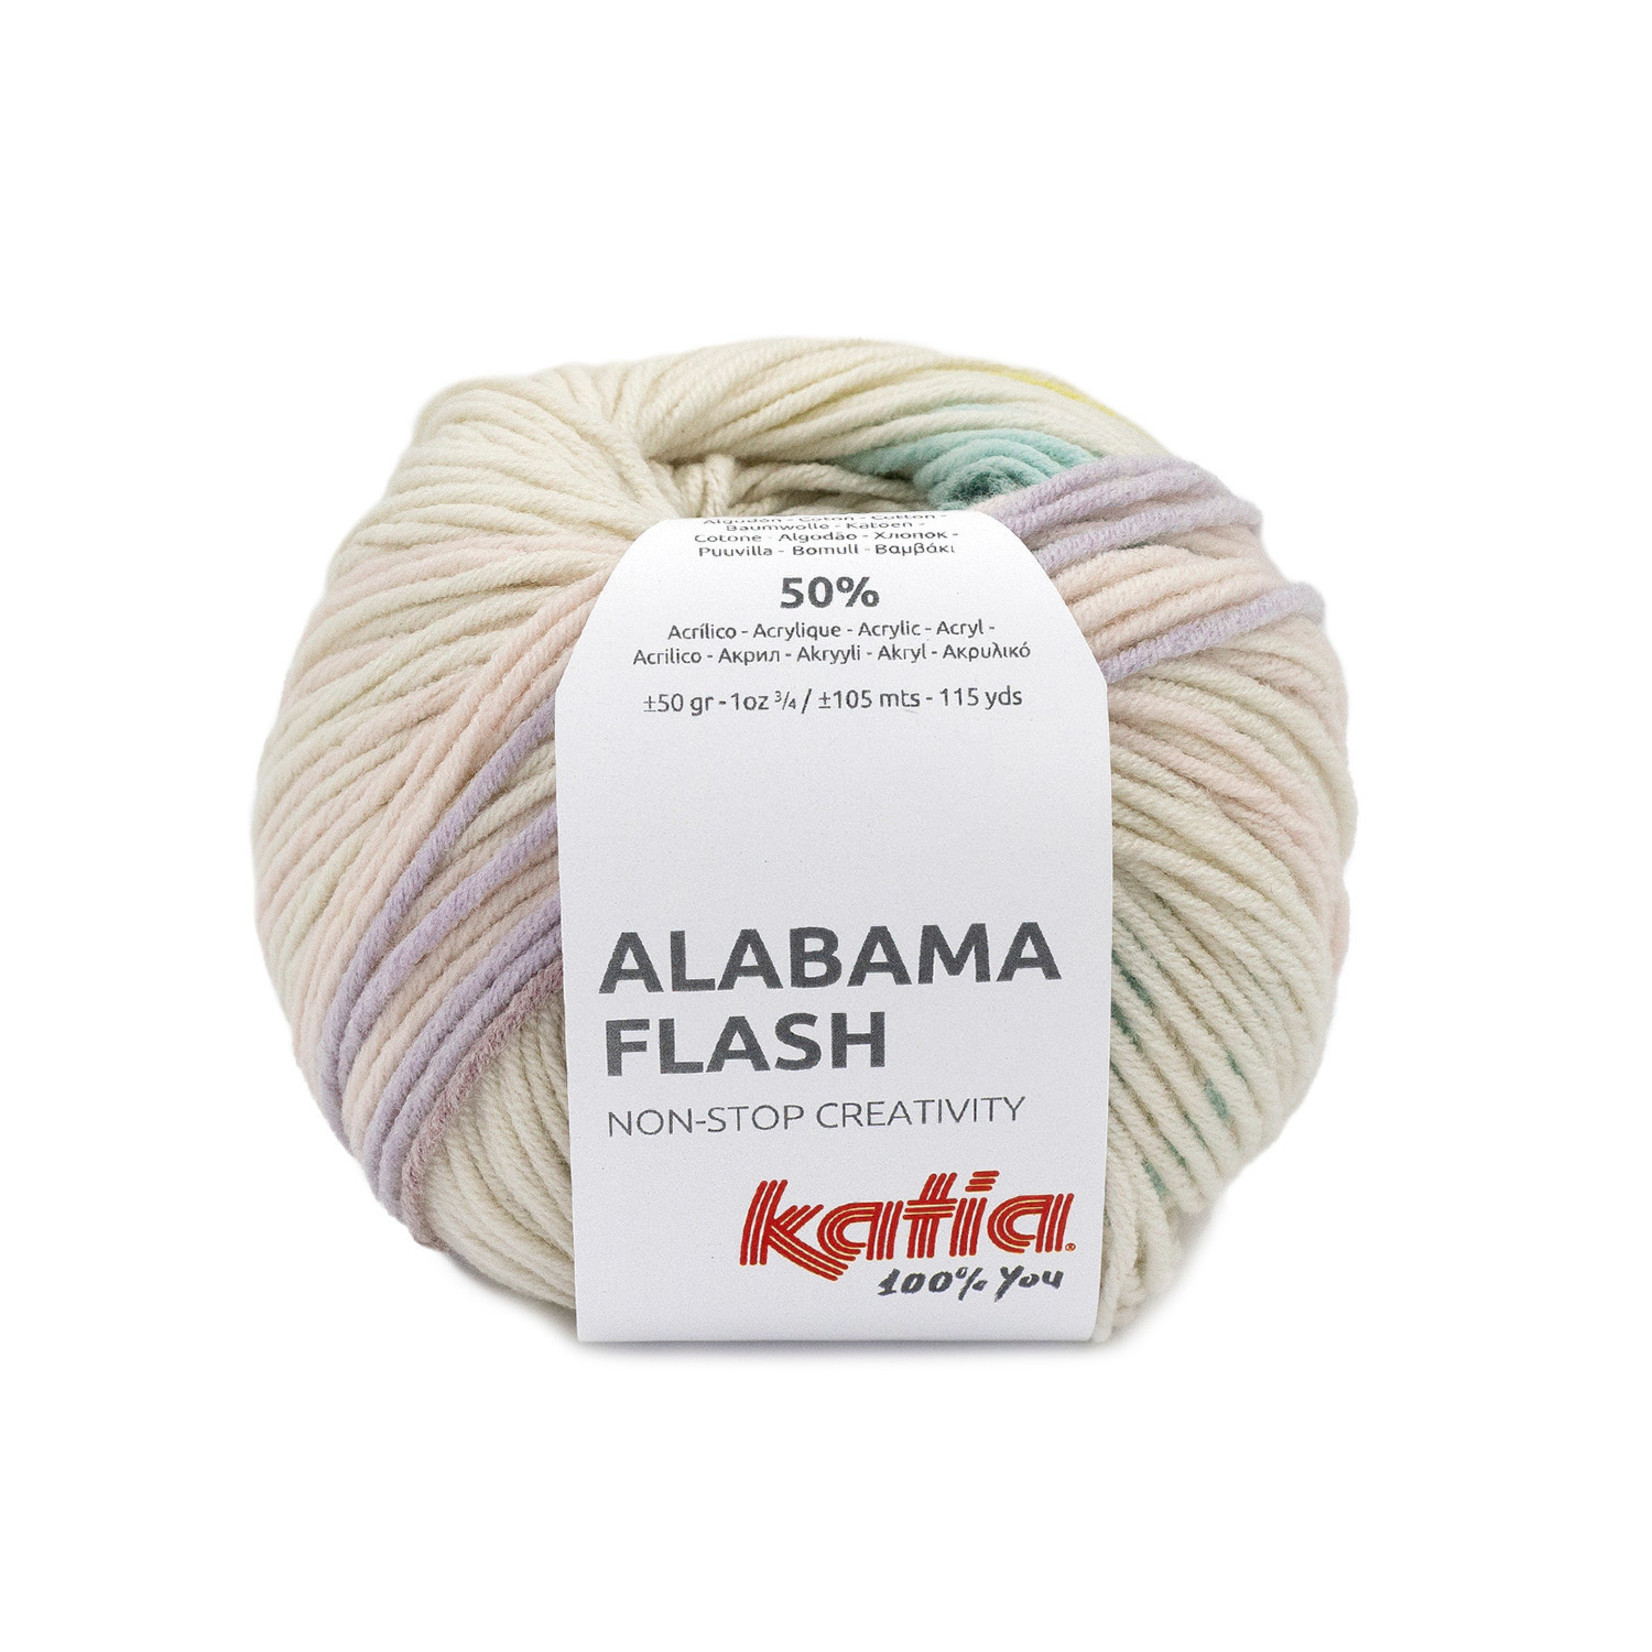 Katia Alabama Flash 105 Ecru-Pistache-Groenblauw-Lila